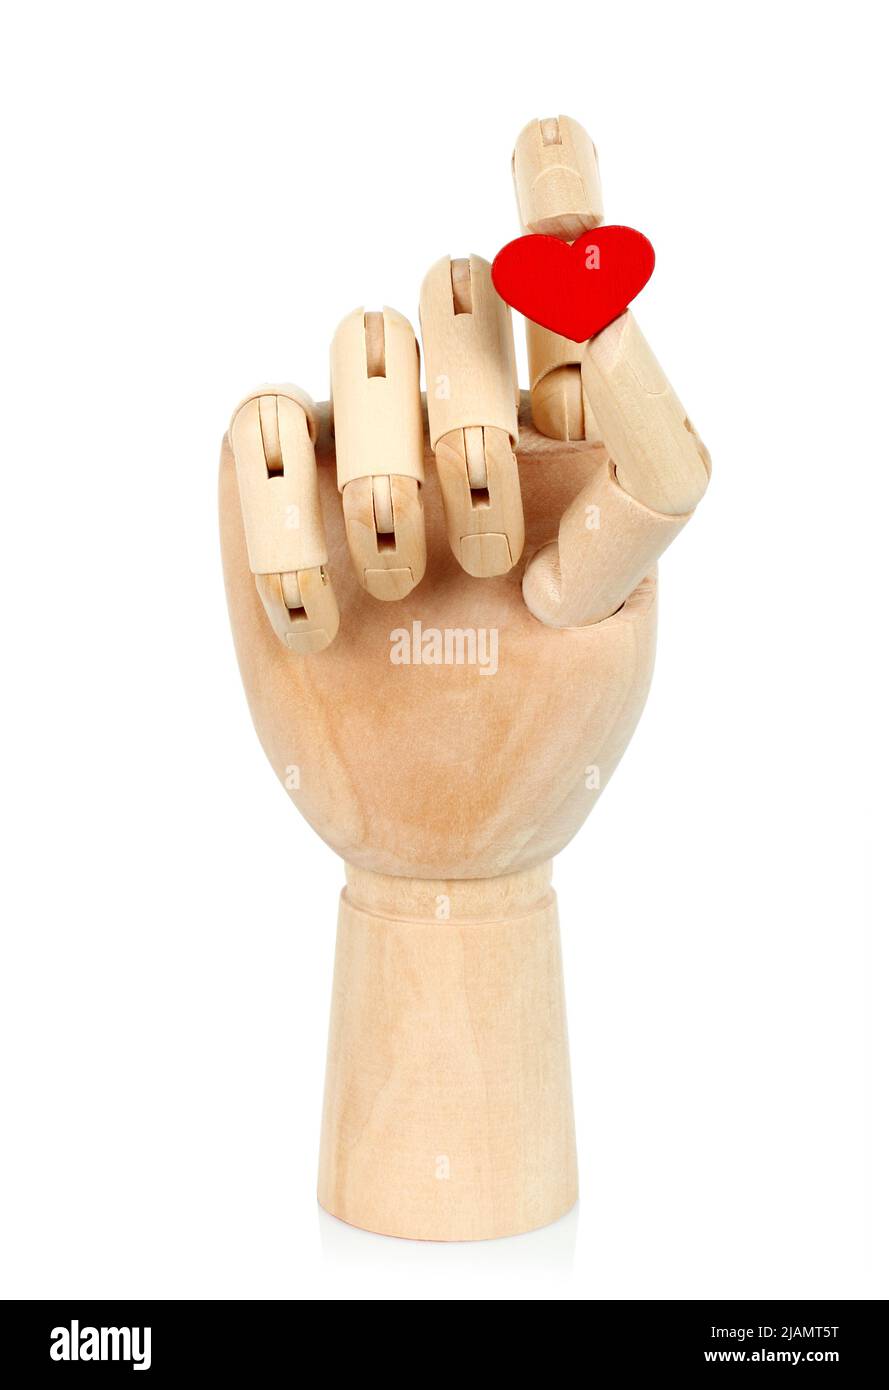 La mano di legno tiene il cuore rosso, su sfondo bianco primo piano Foto Stock